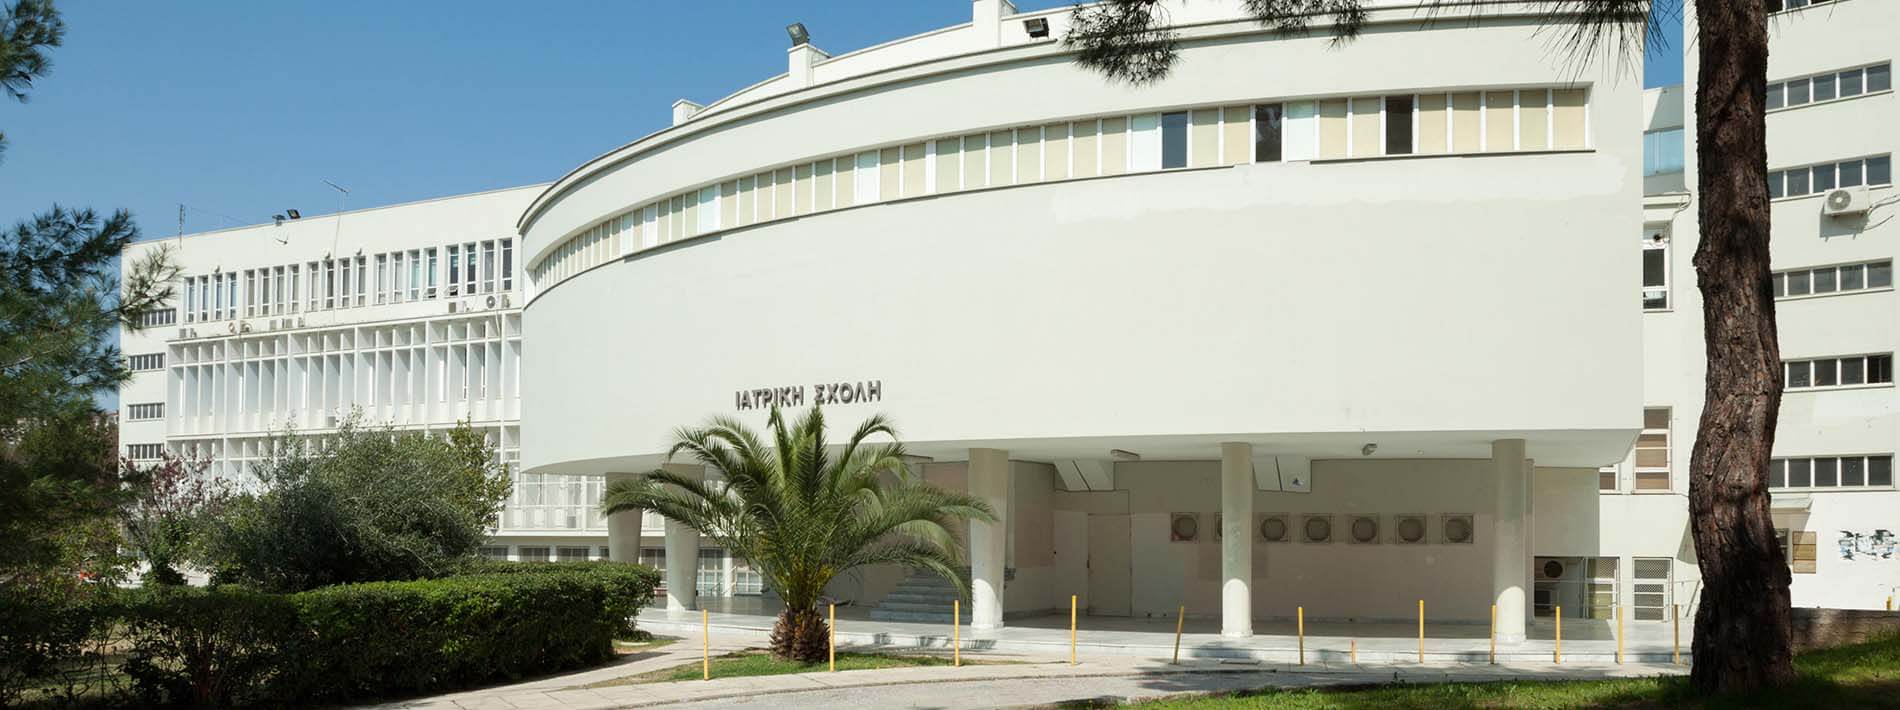 Aristotle University of Thessaloniki School of Medicine